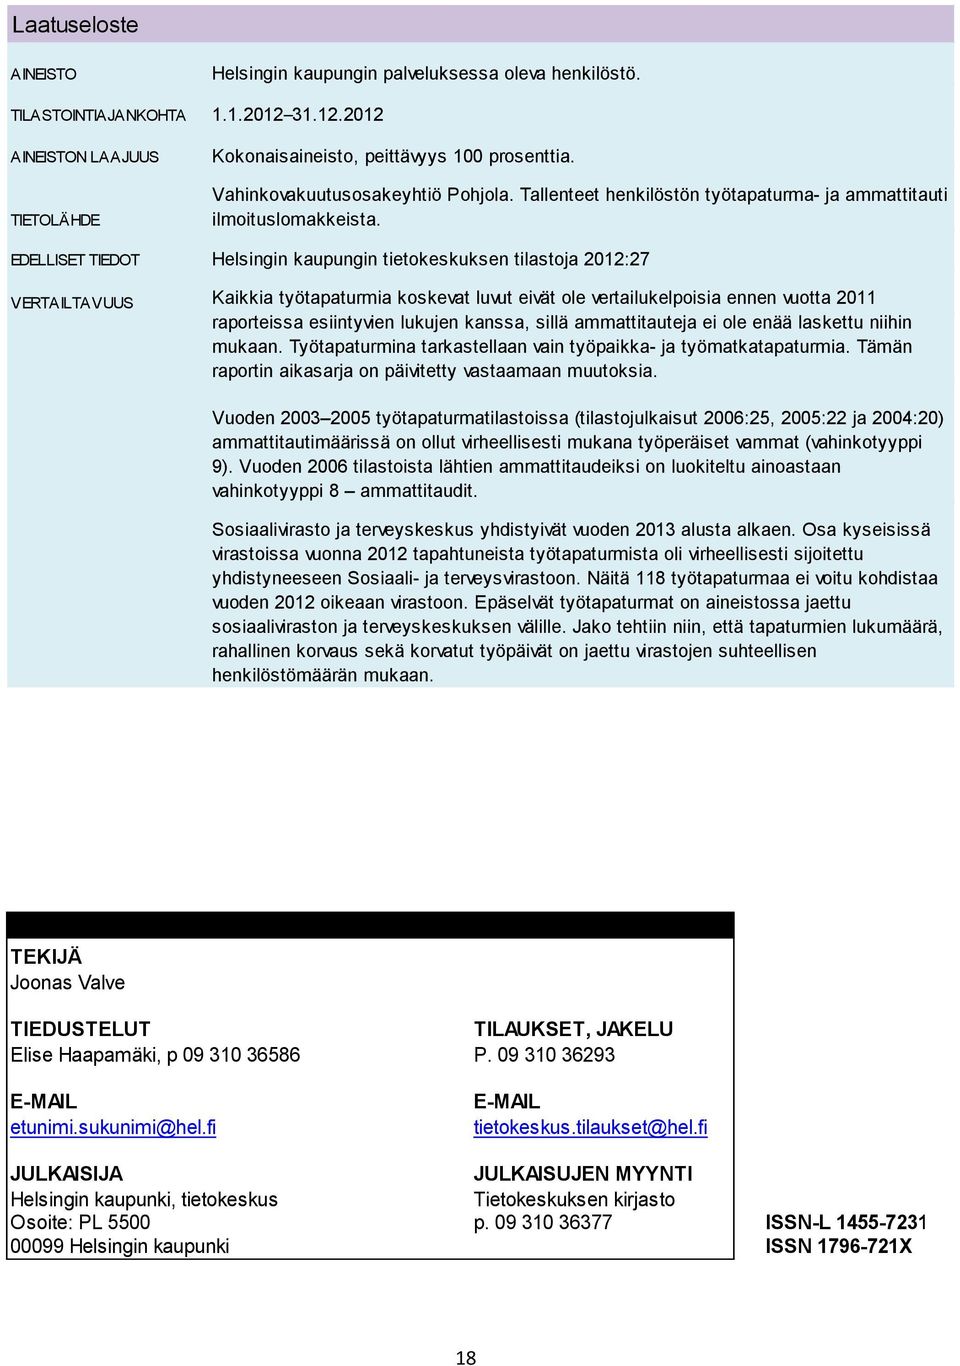 EDELLISET TIEDOT Helsingin kaupungin tietokeskuksen tilastoja 2012:27 VERTAILTAVUUS Kaikkia työtapaturmia koskevat luvut eivät ole vertailukelpoisia ennen vuotta 2011 raporteissa esiintyvien lukujen